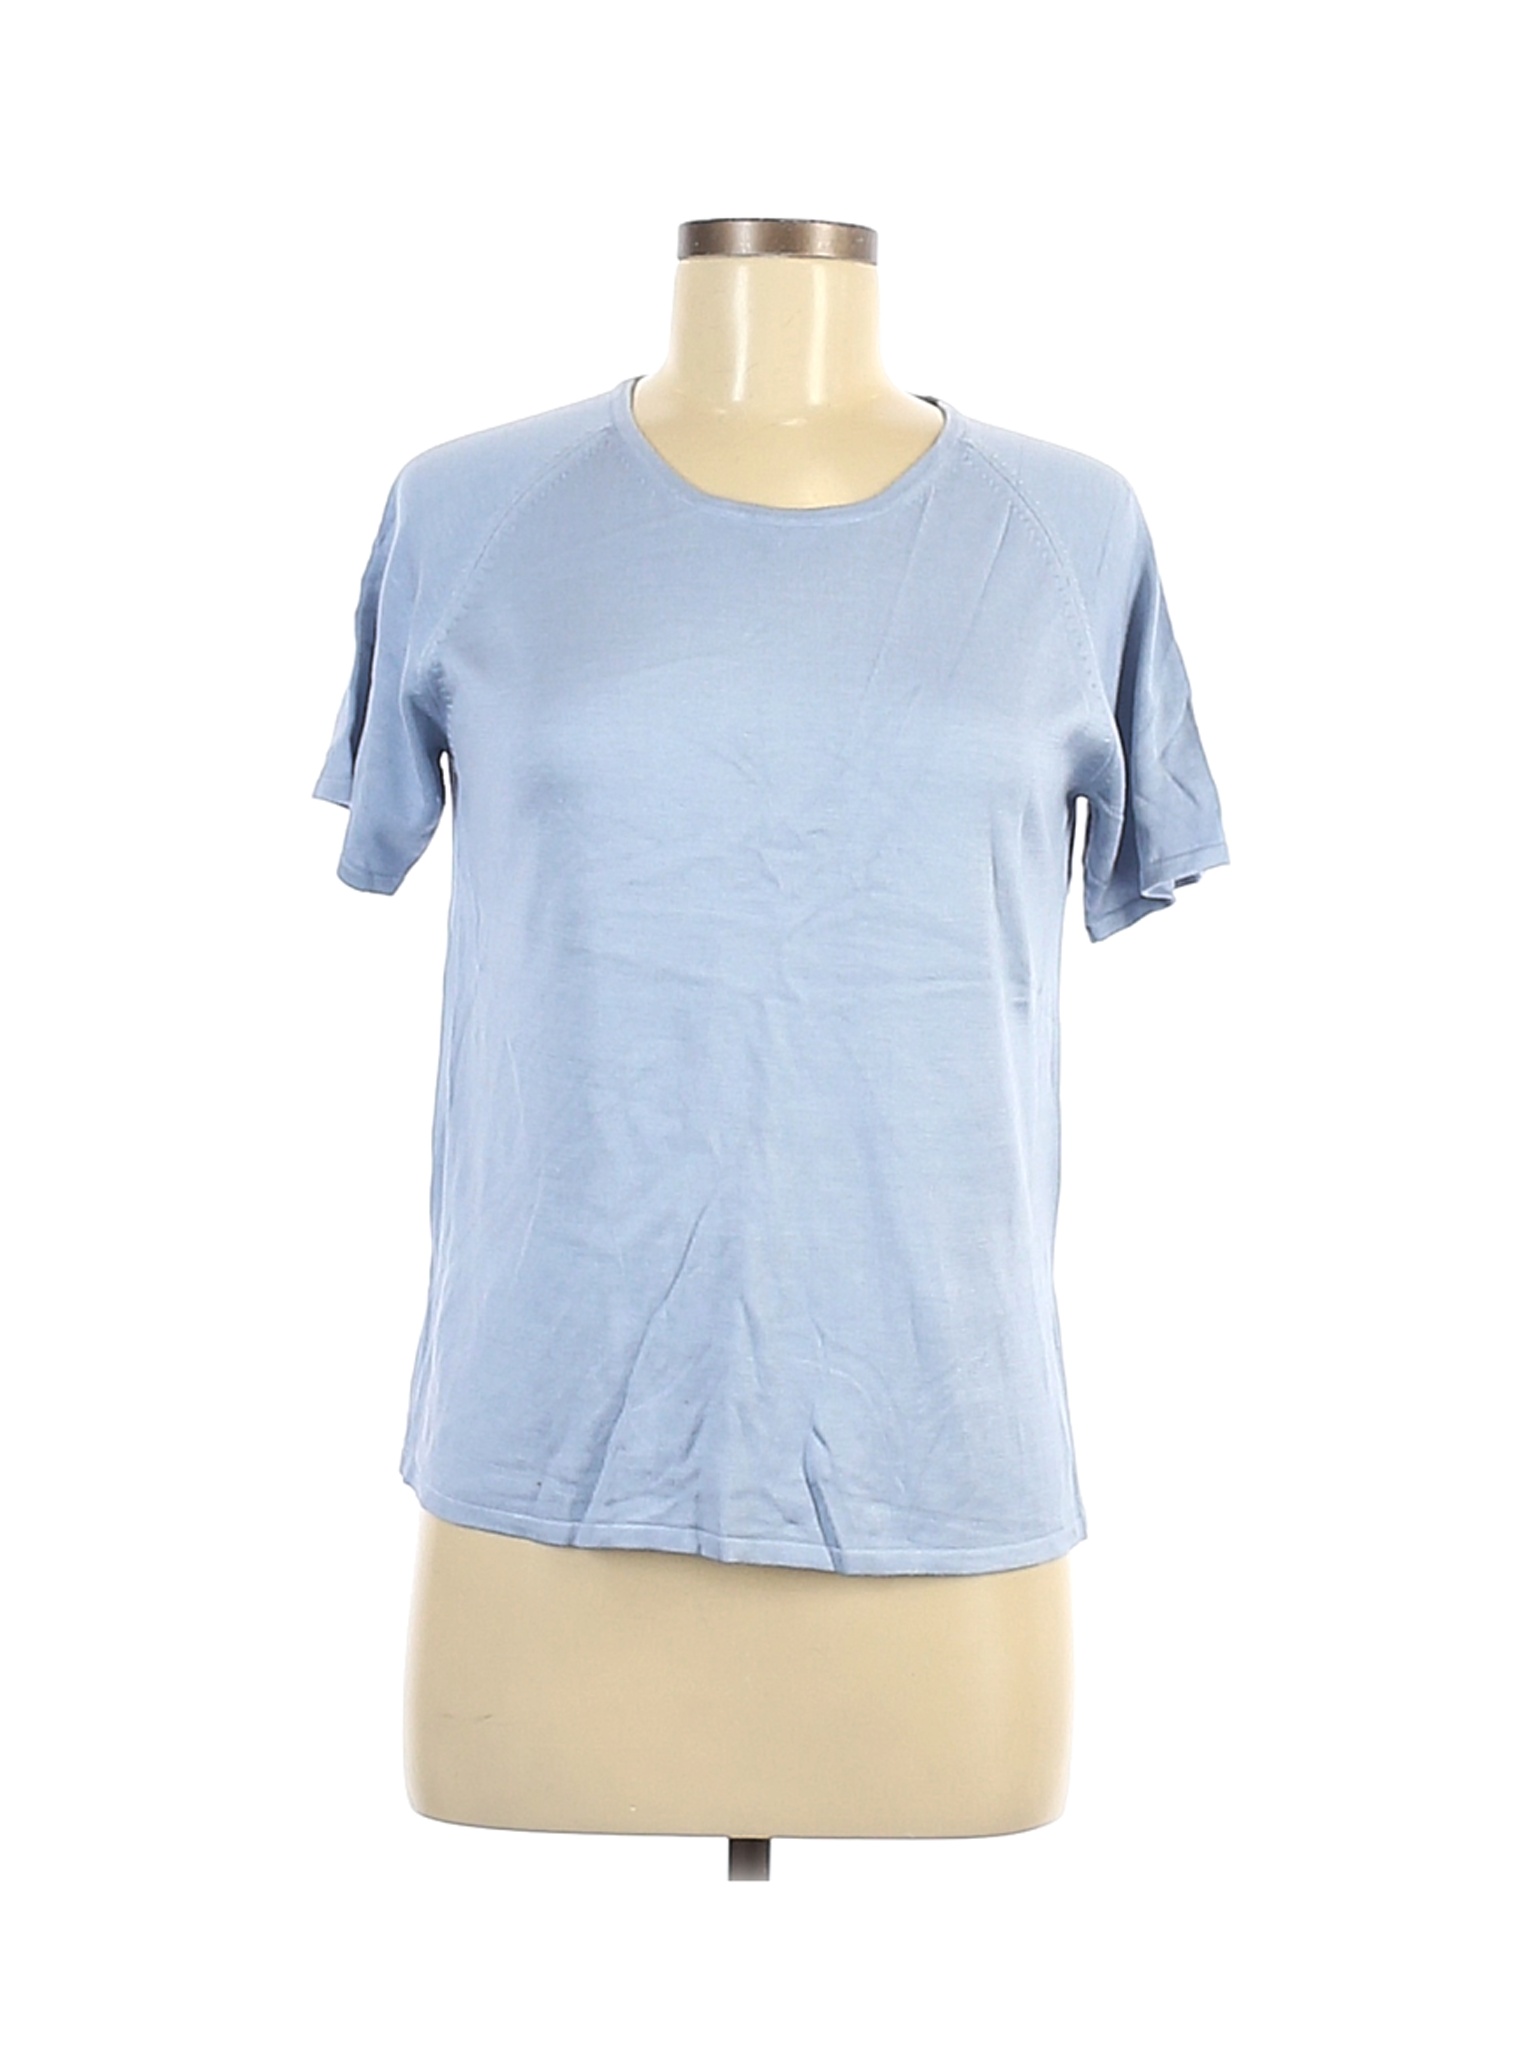 August Silk Women Blue Short Sleeve Silk Top L | eBay